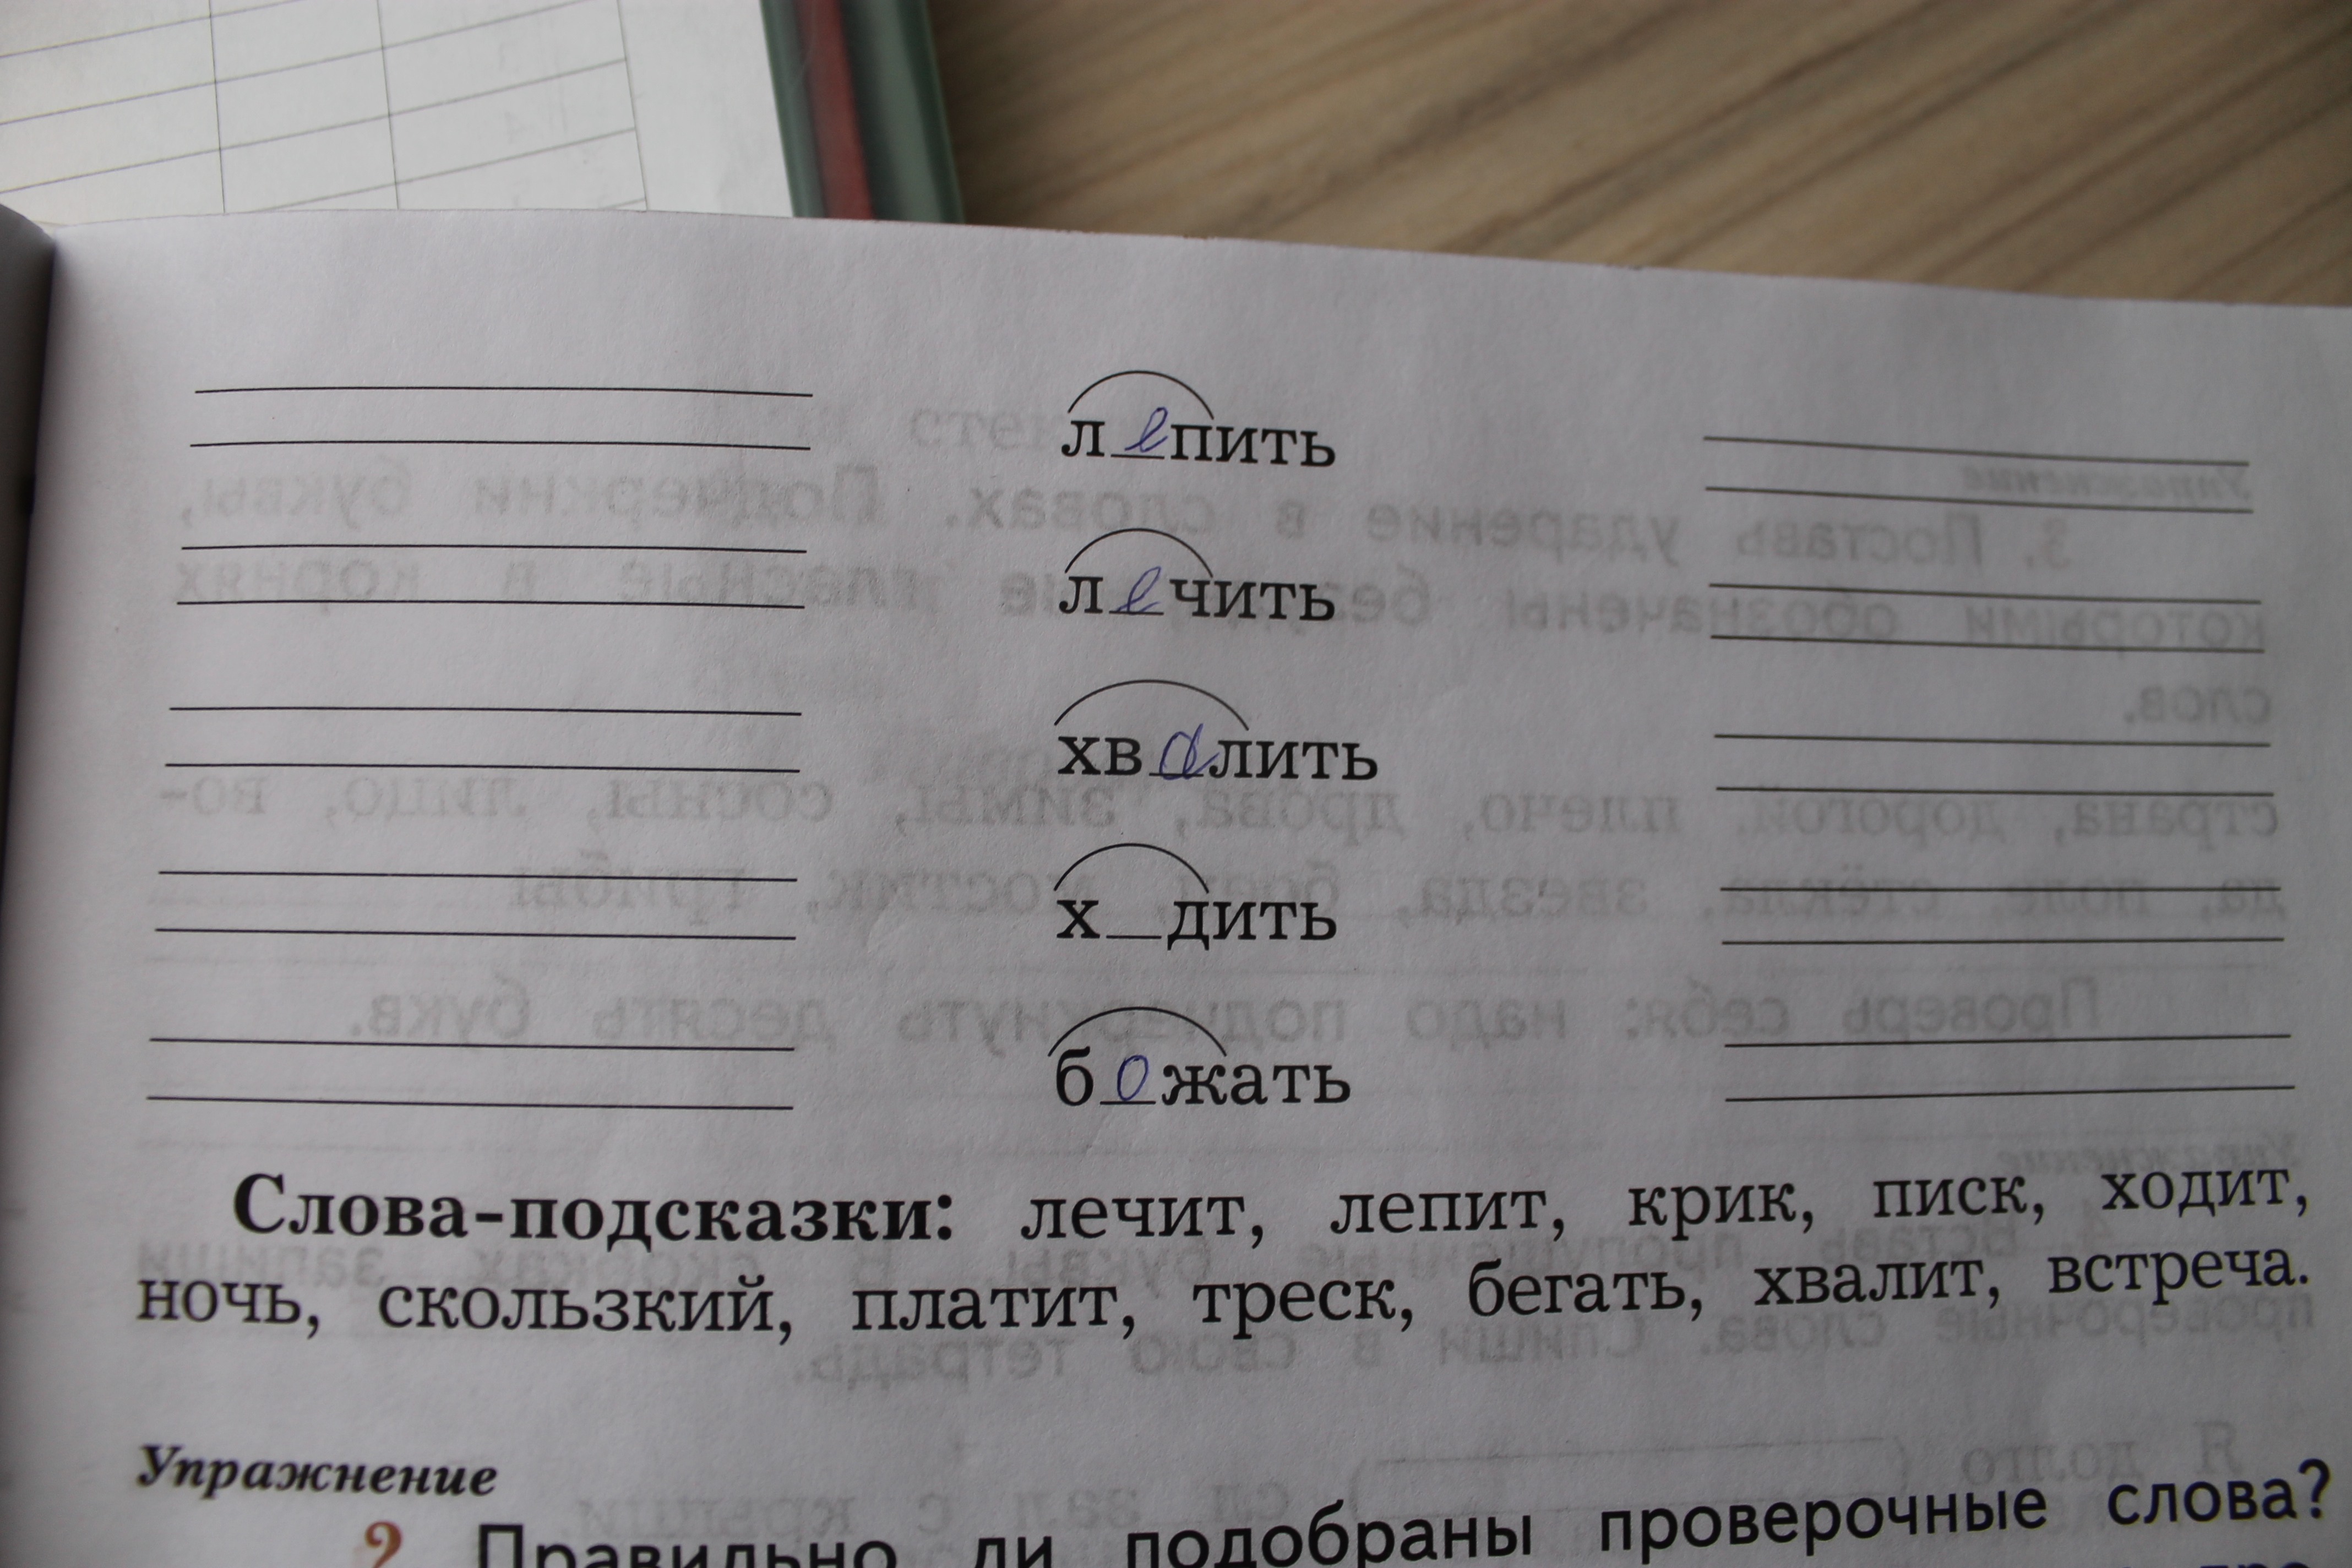 Русский язык проверочные слова 5 класс. Подбери и запиши проверочный е слово. Запиши проверочные слова. Подбери и запиши проверочные слова вставь пропущенные. Подобрать проверочное слово.